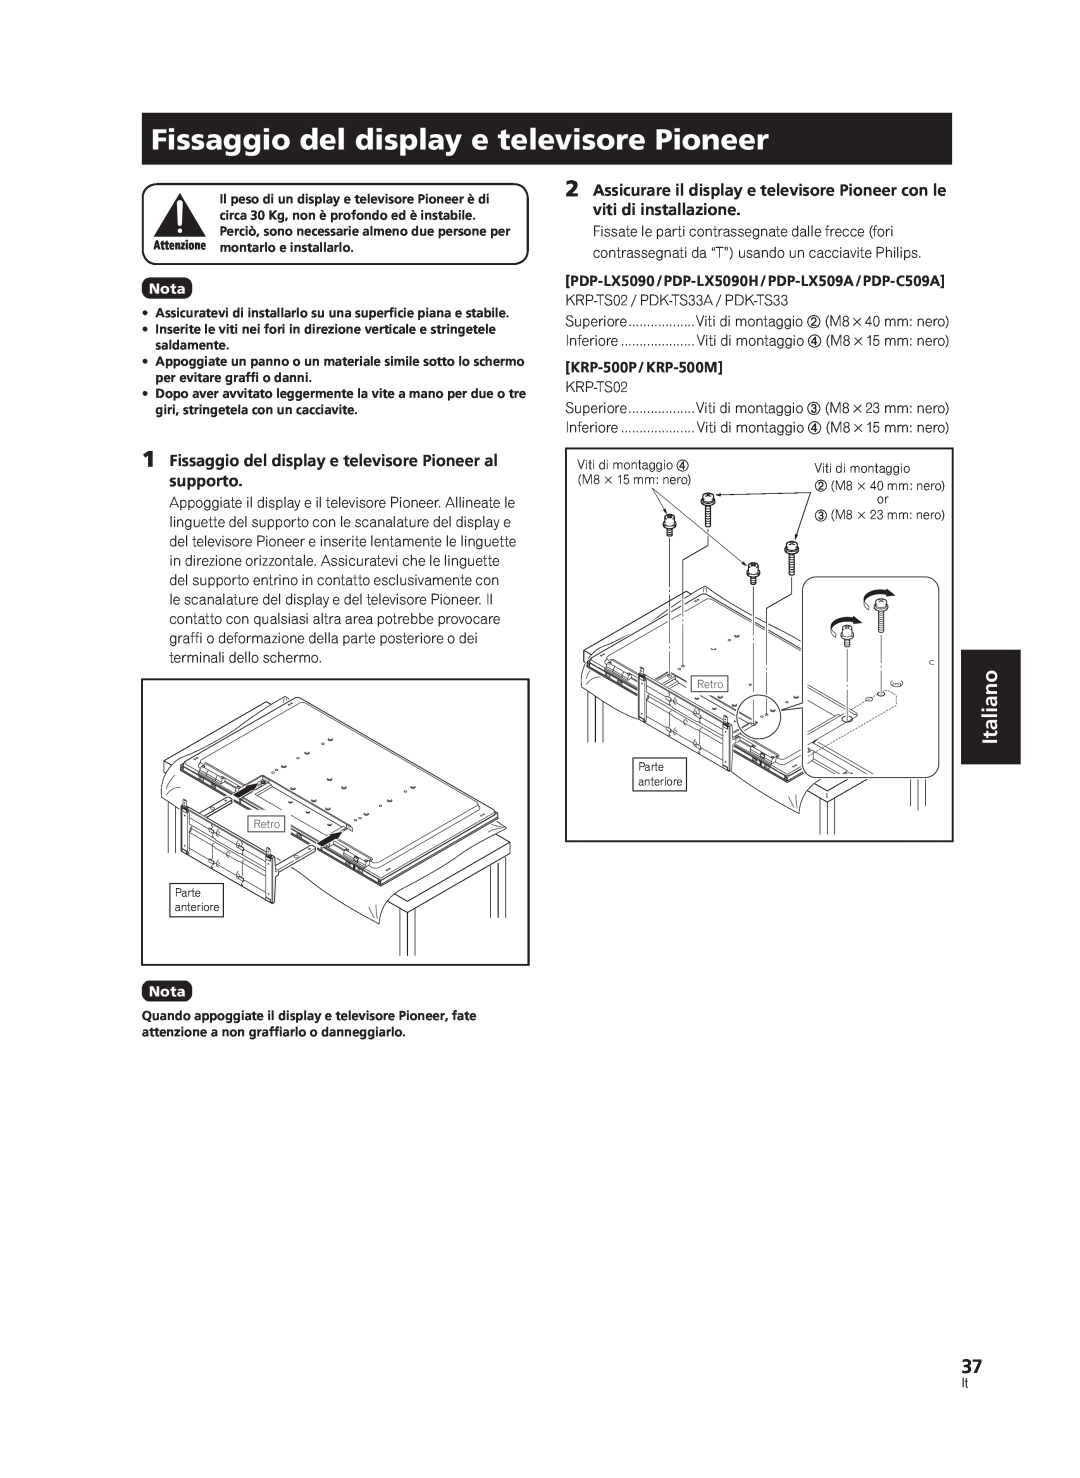 Pioneer PDK-TS33A, KRP-TS02 manual Fissaggio del display e televisore Pioneer, Italiano 